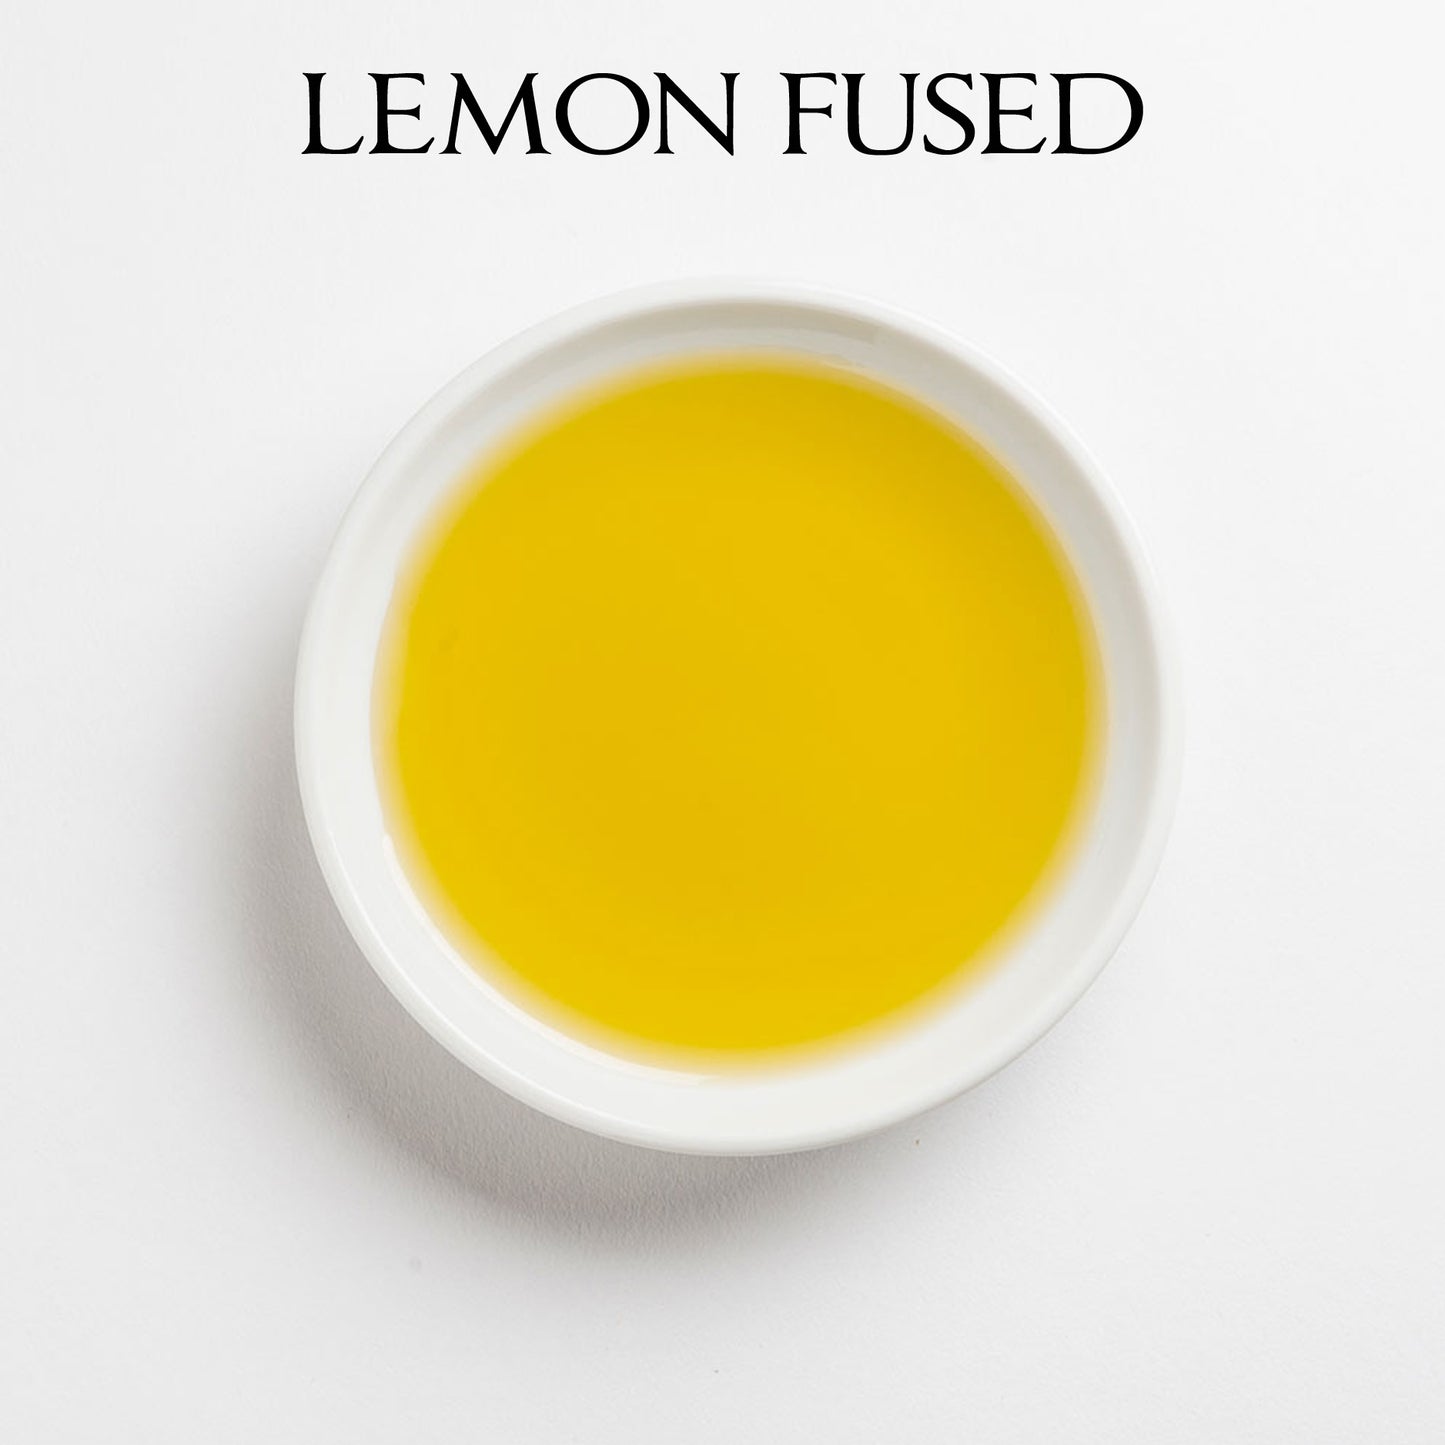 LEMON Fused Olive Oil - Italy